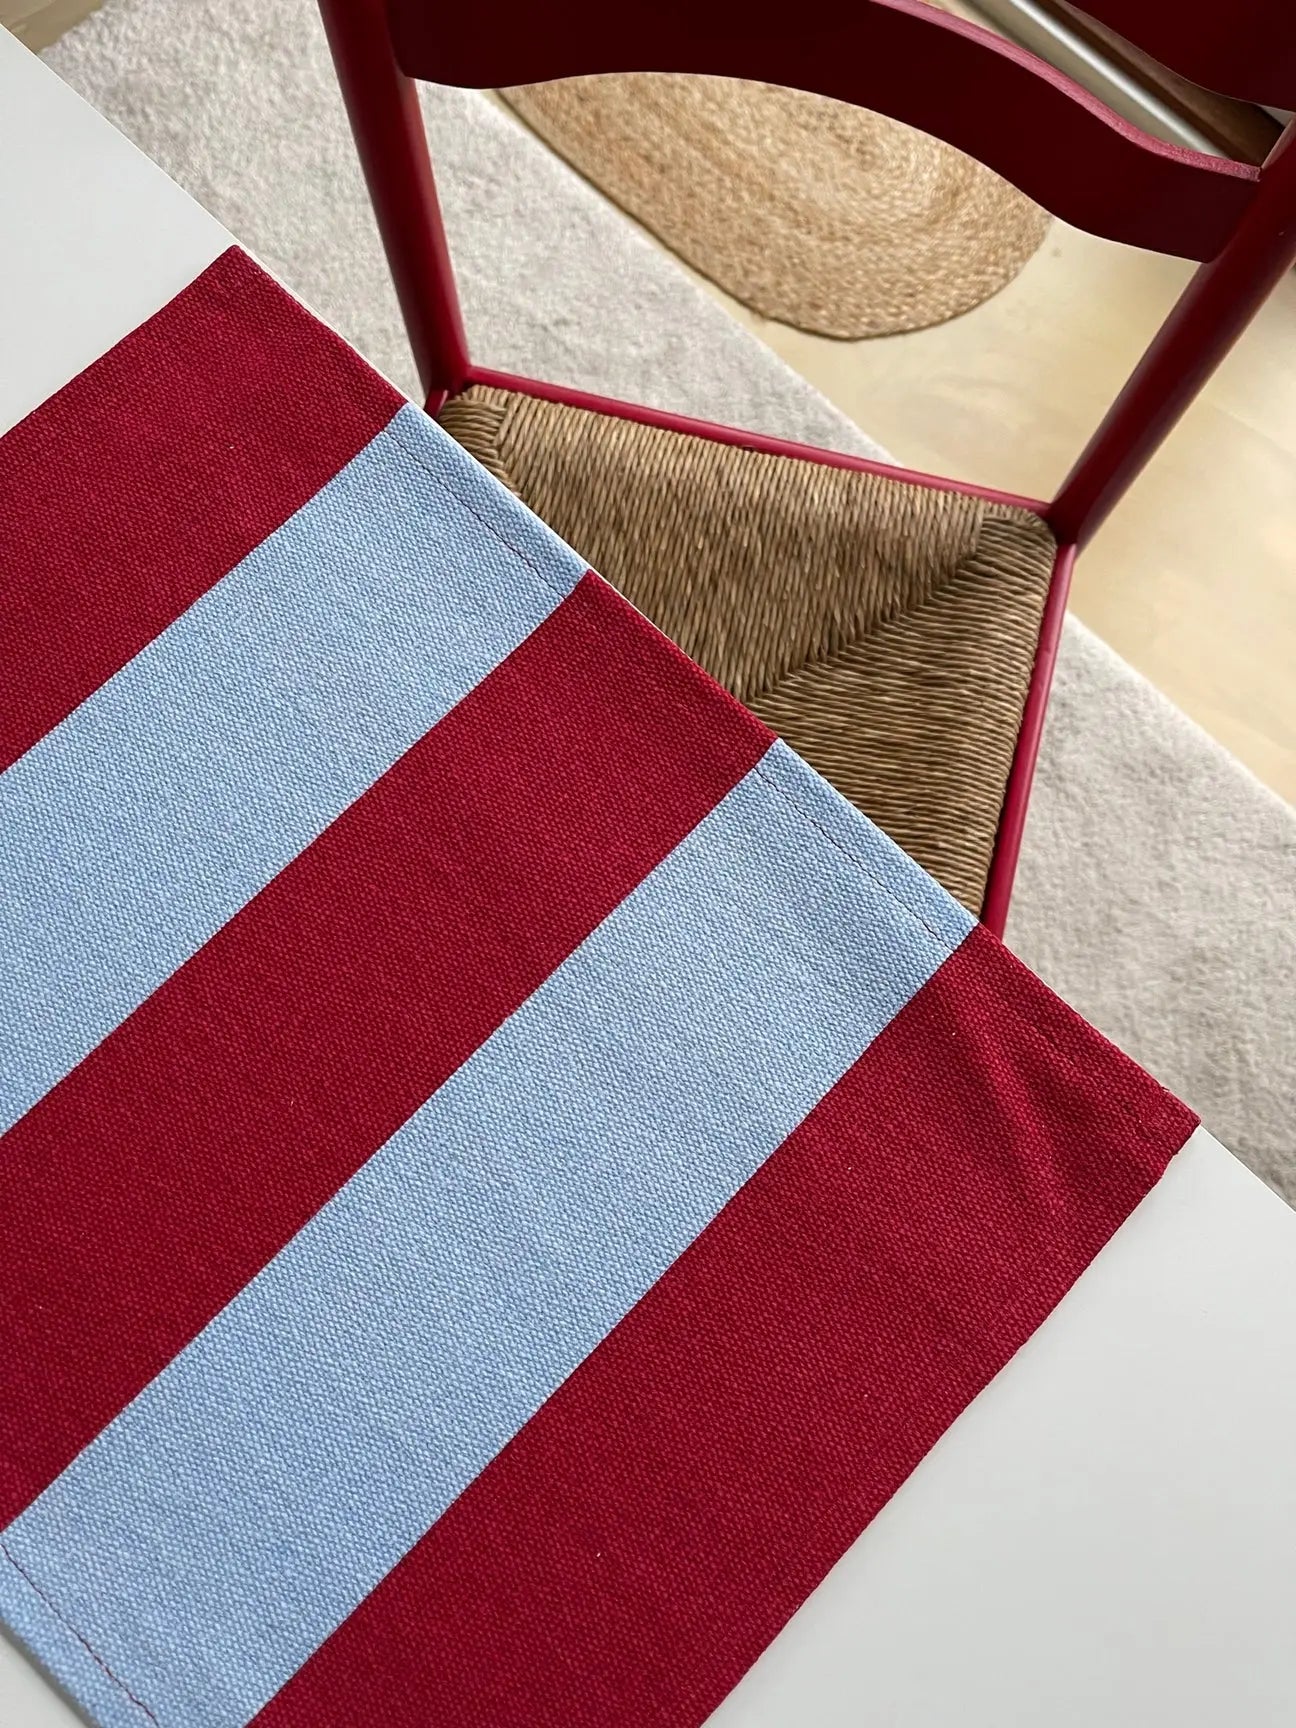 Jou Quilts dækkeserviet | Sommer vinrød/blå striber Jou Quilts